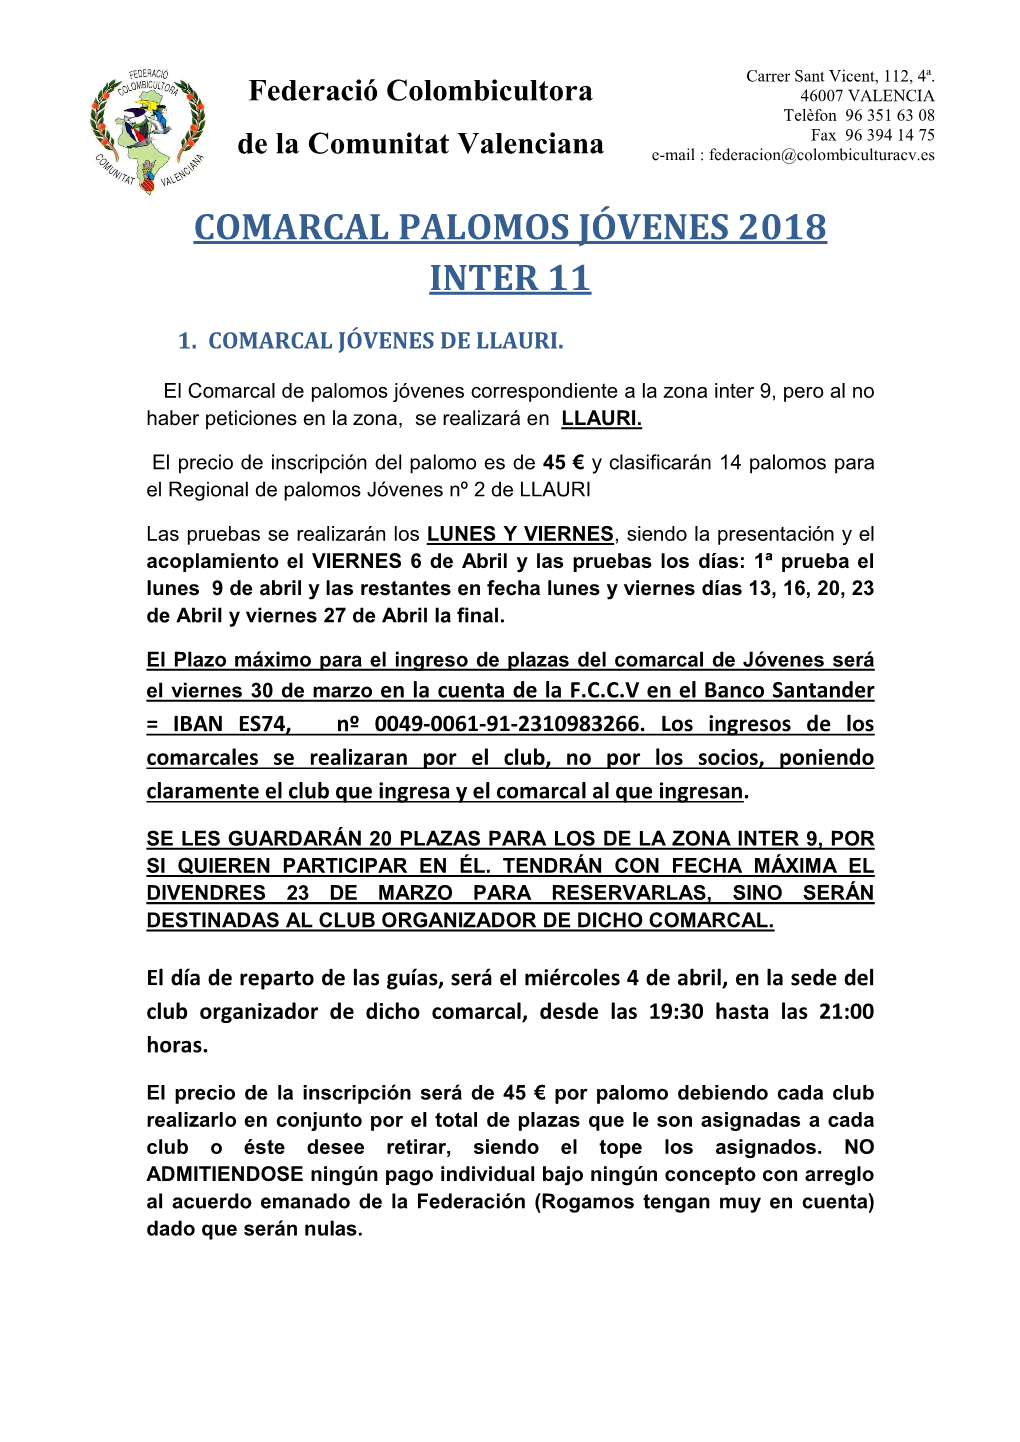 Comarcal Palomos Jóvenes 2018 Inter 11